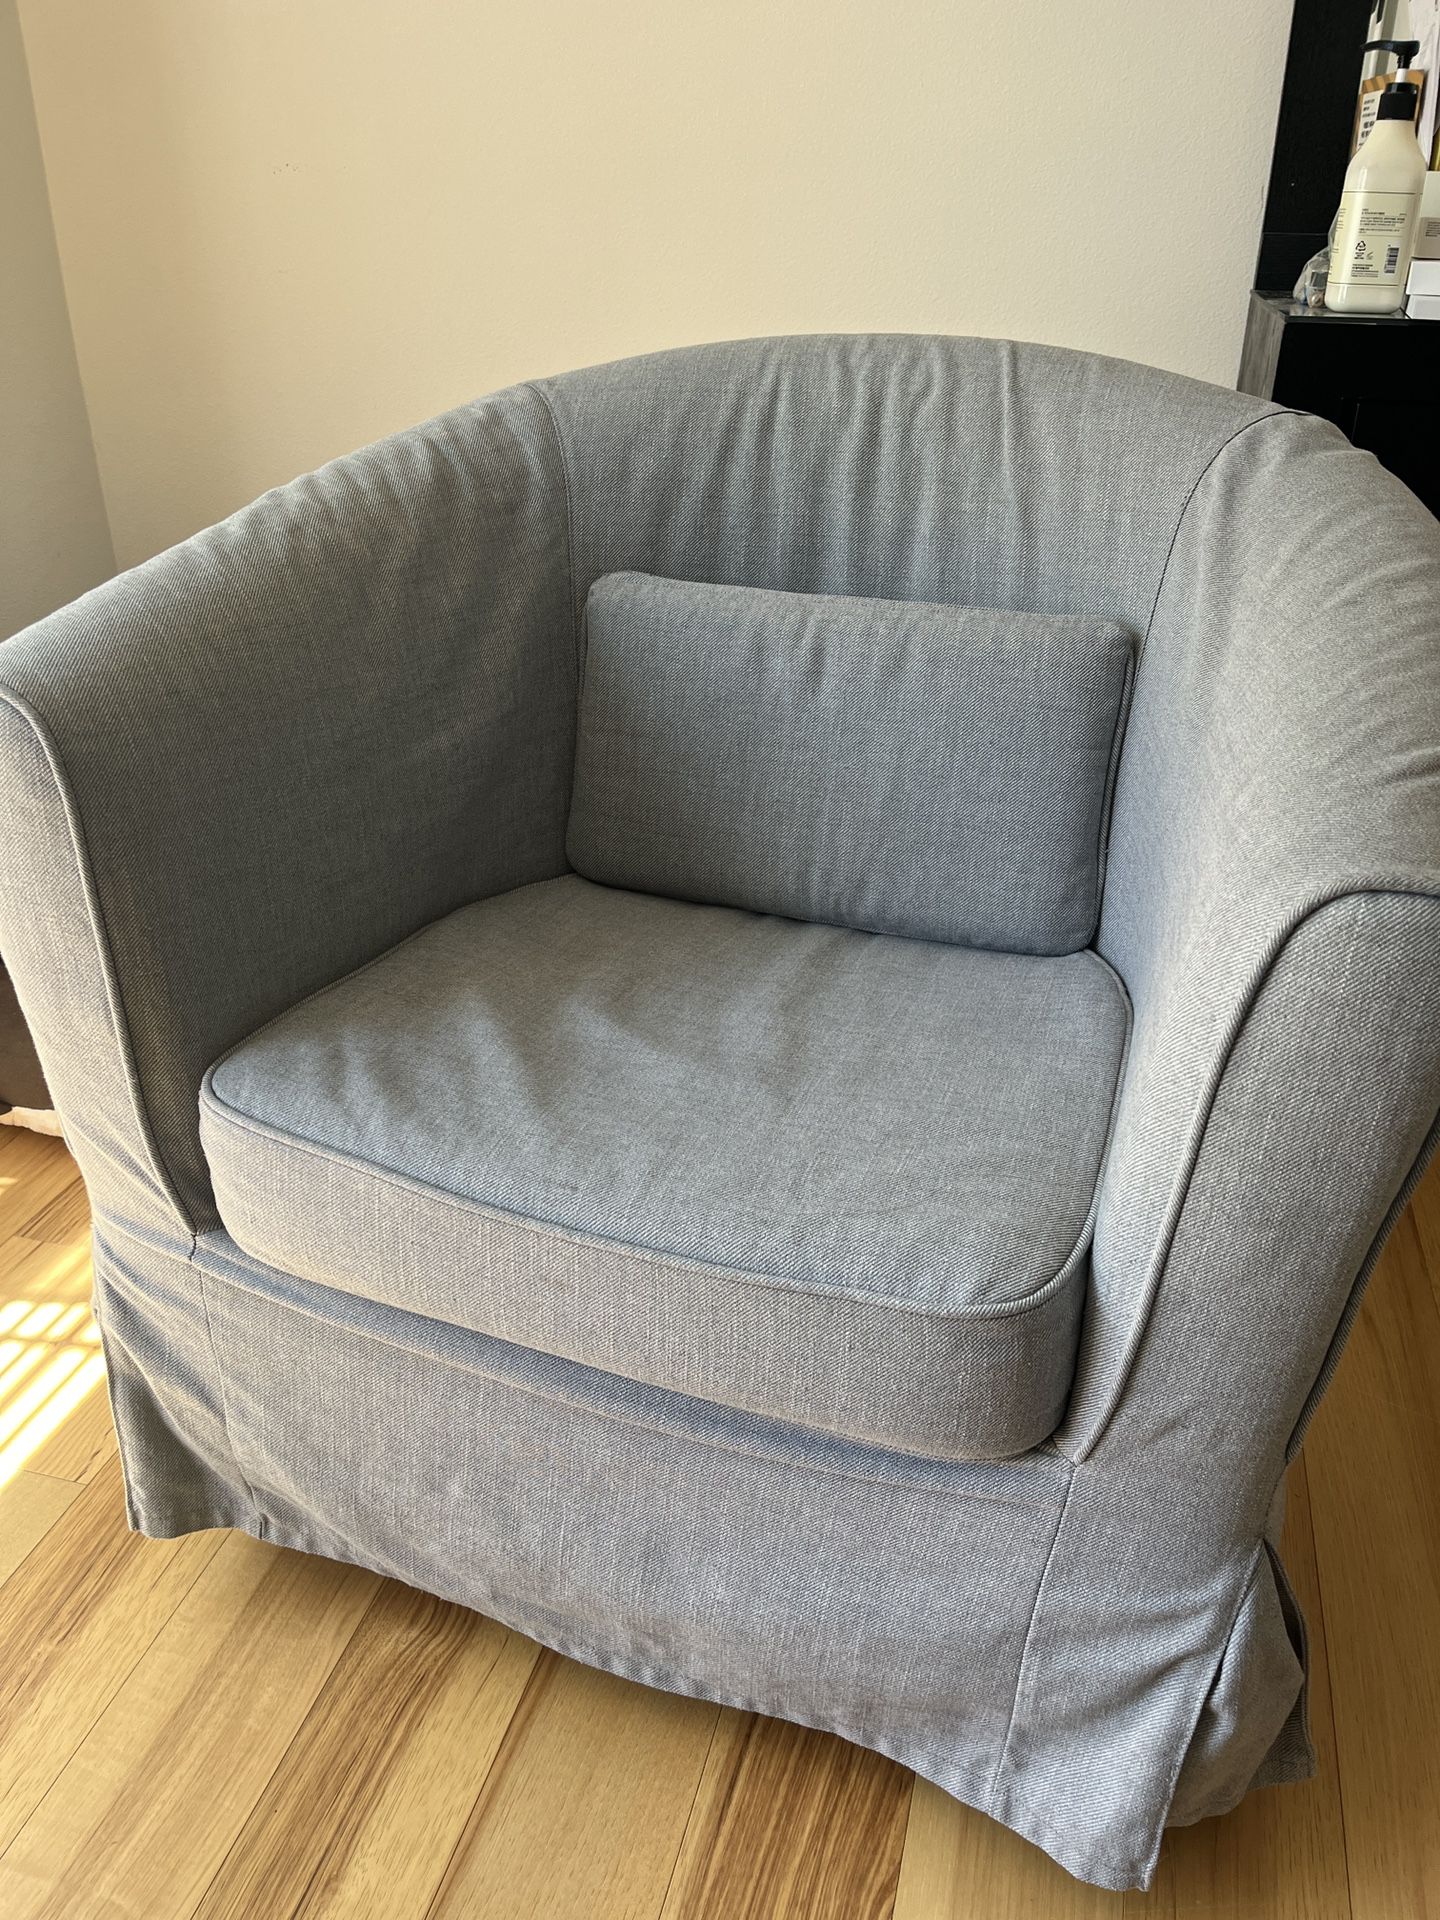 IKEA Sofa Armchair